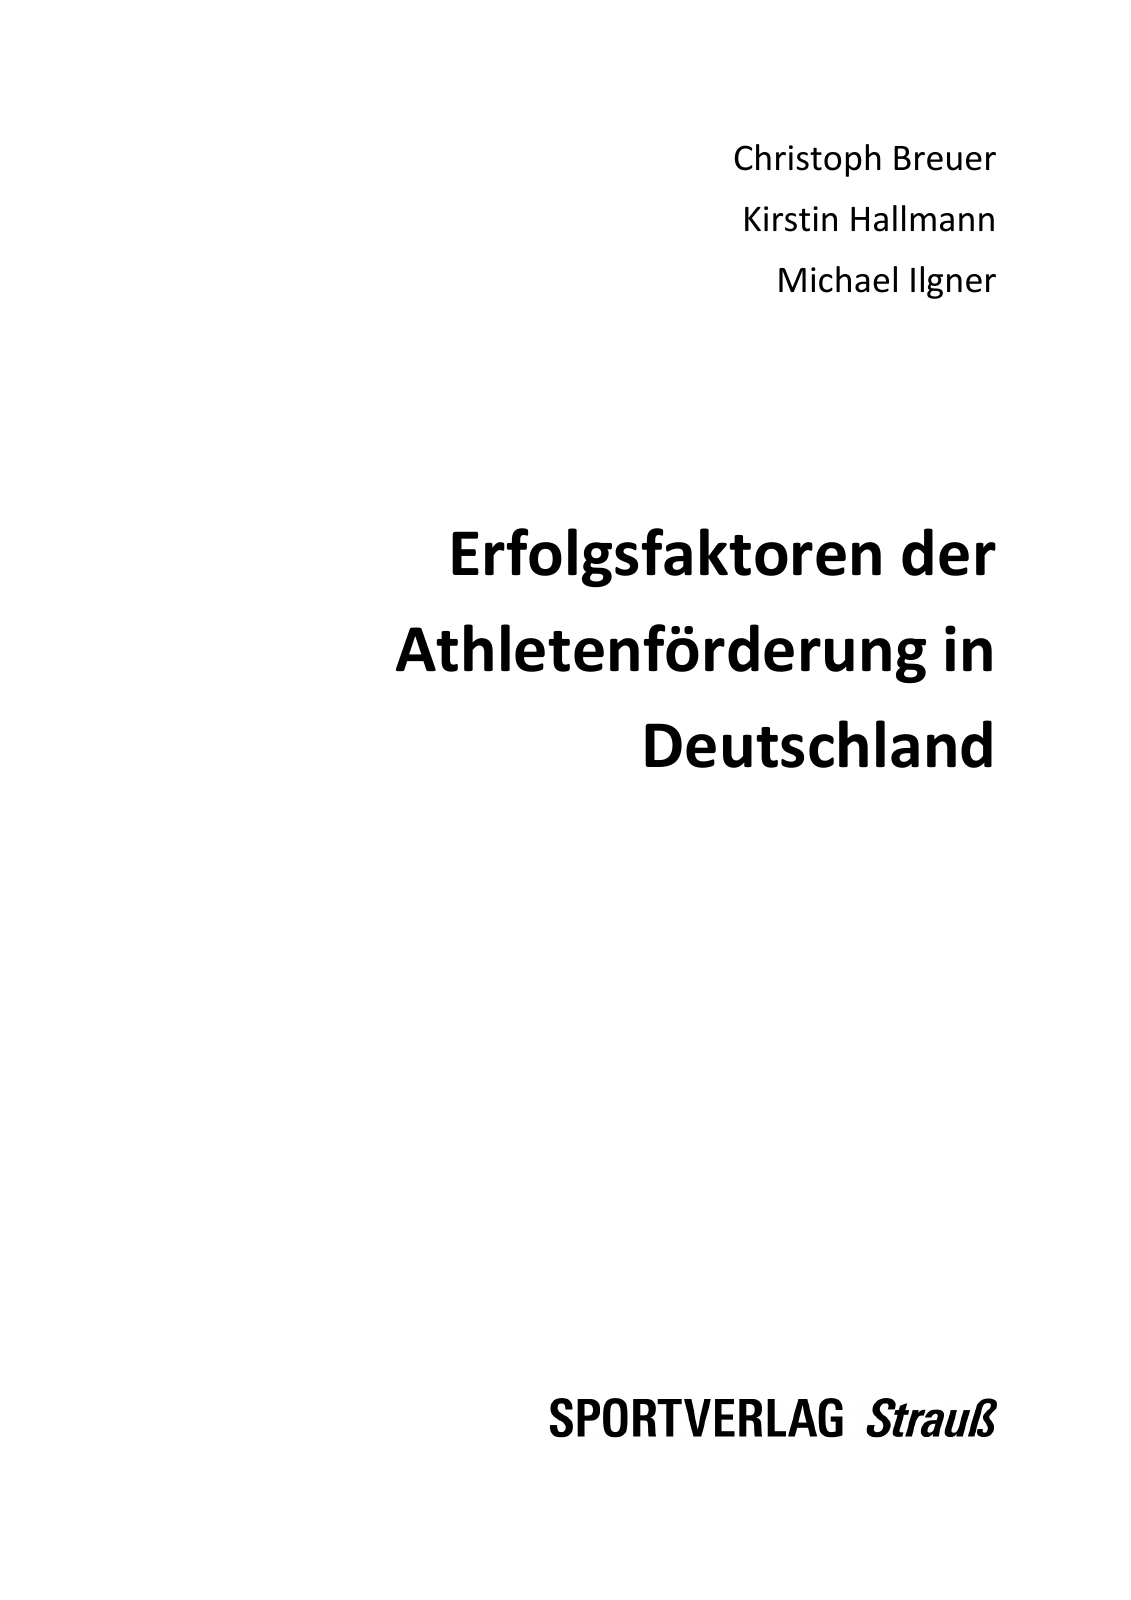 Vorschau Erfolgsfaktoren der Athletenförderung in Deutschland Seite 3